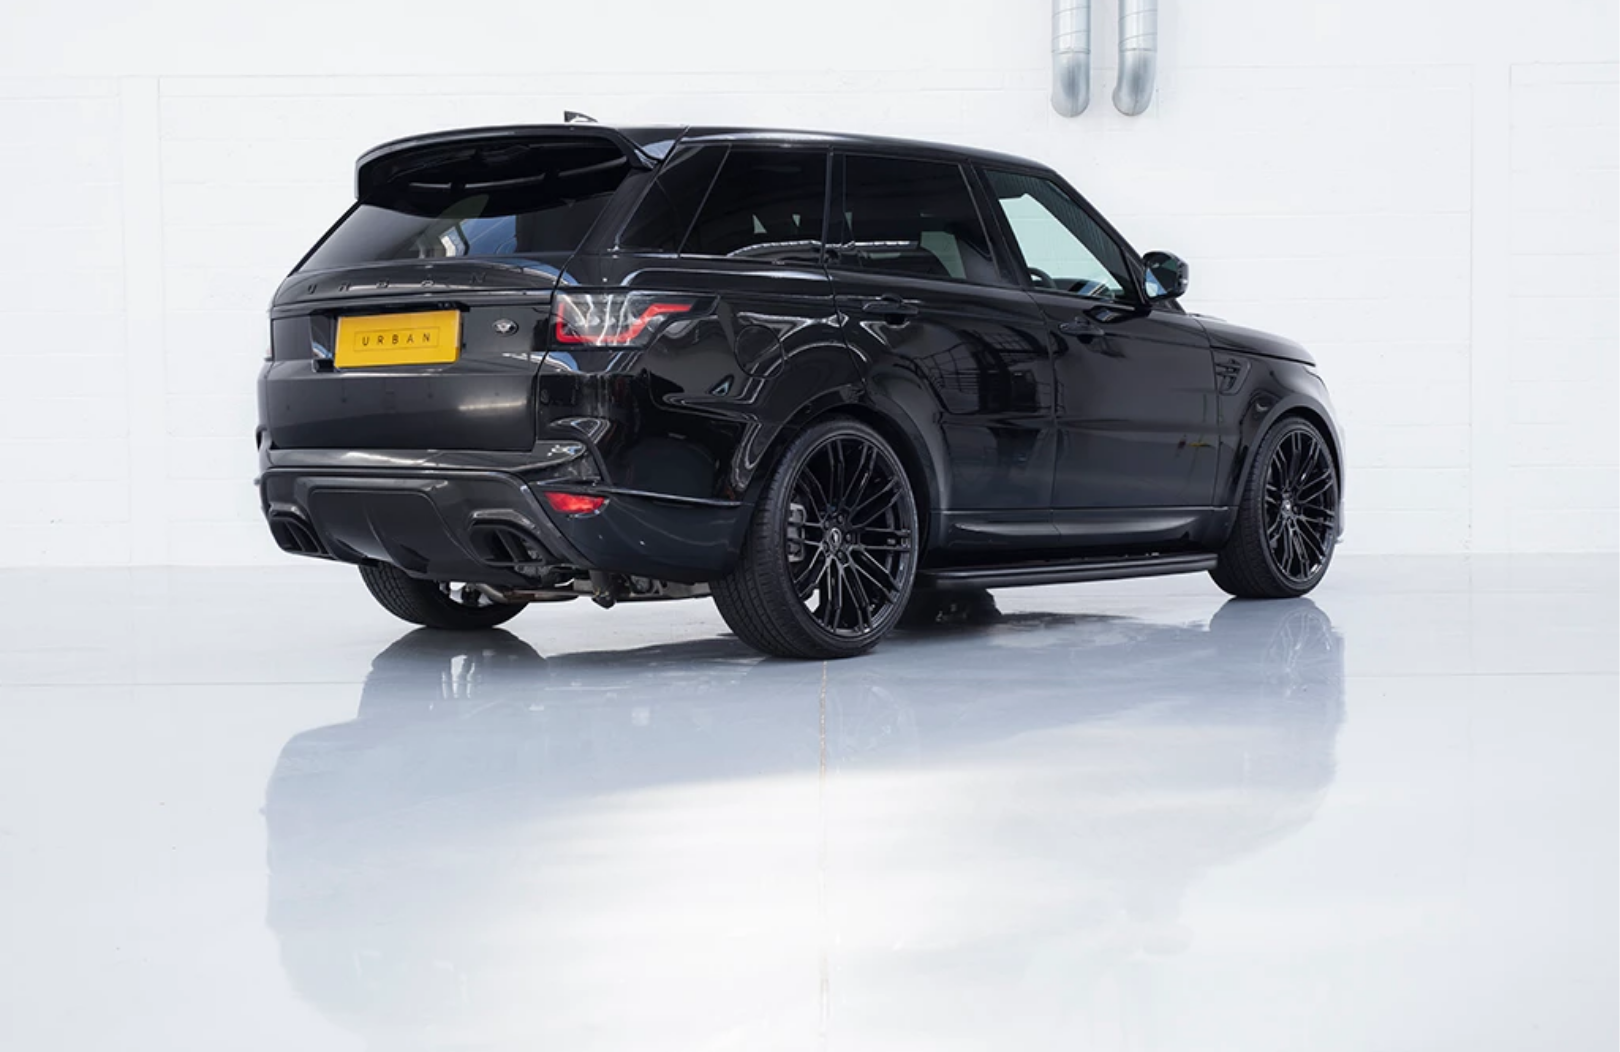 Urban  body kit for Range Rover Sport 2 new style